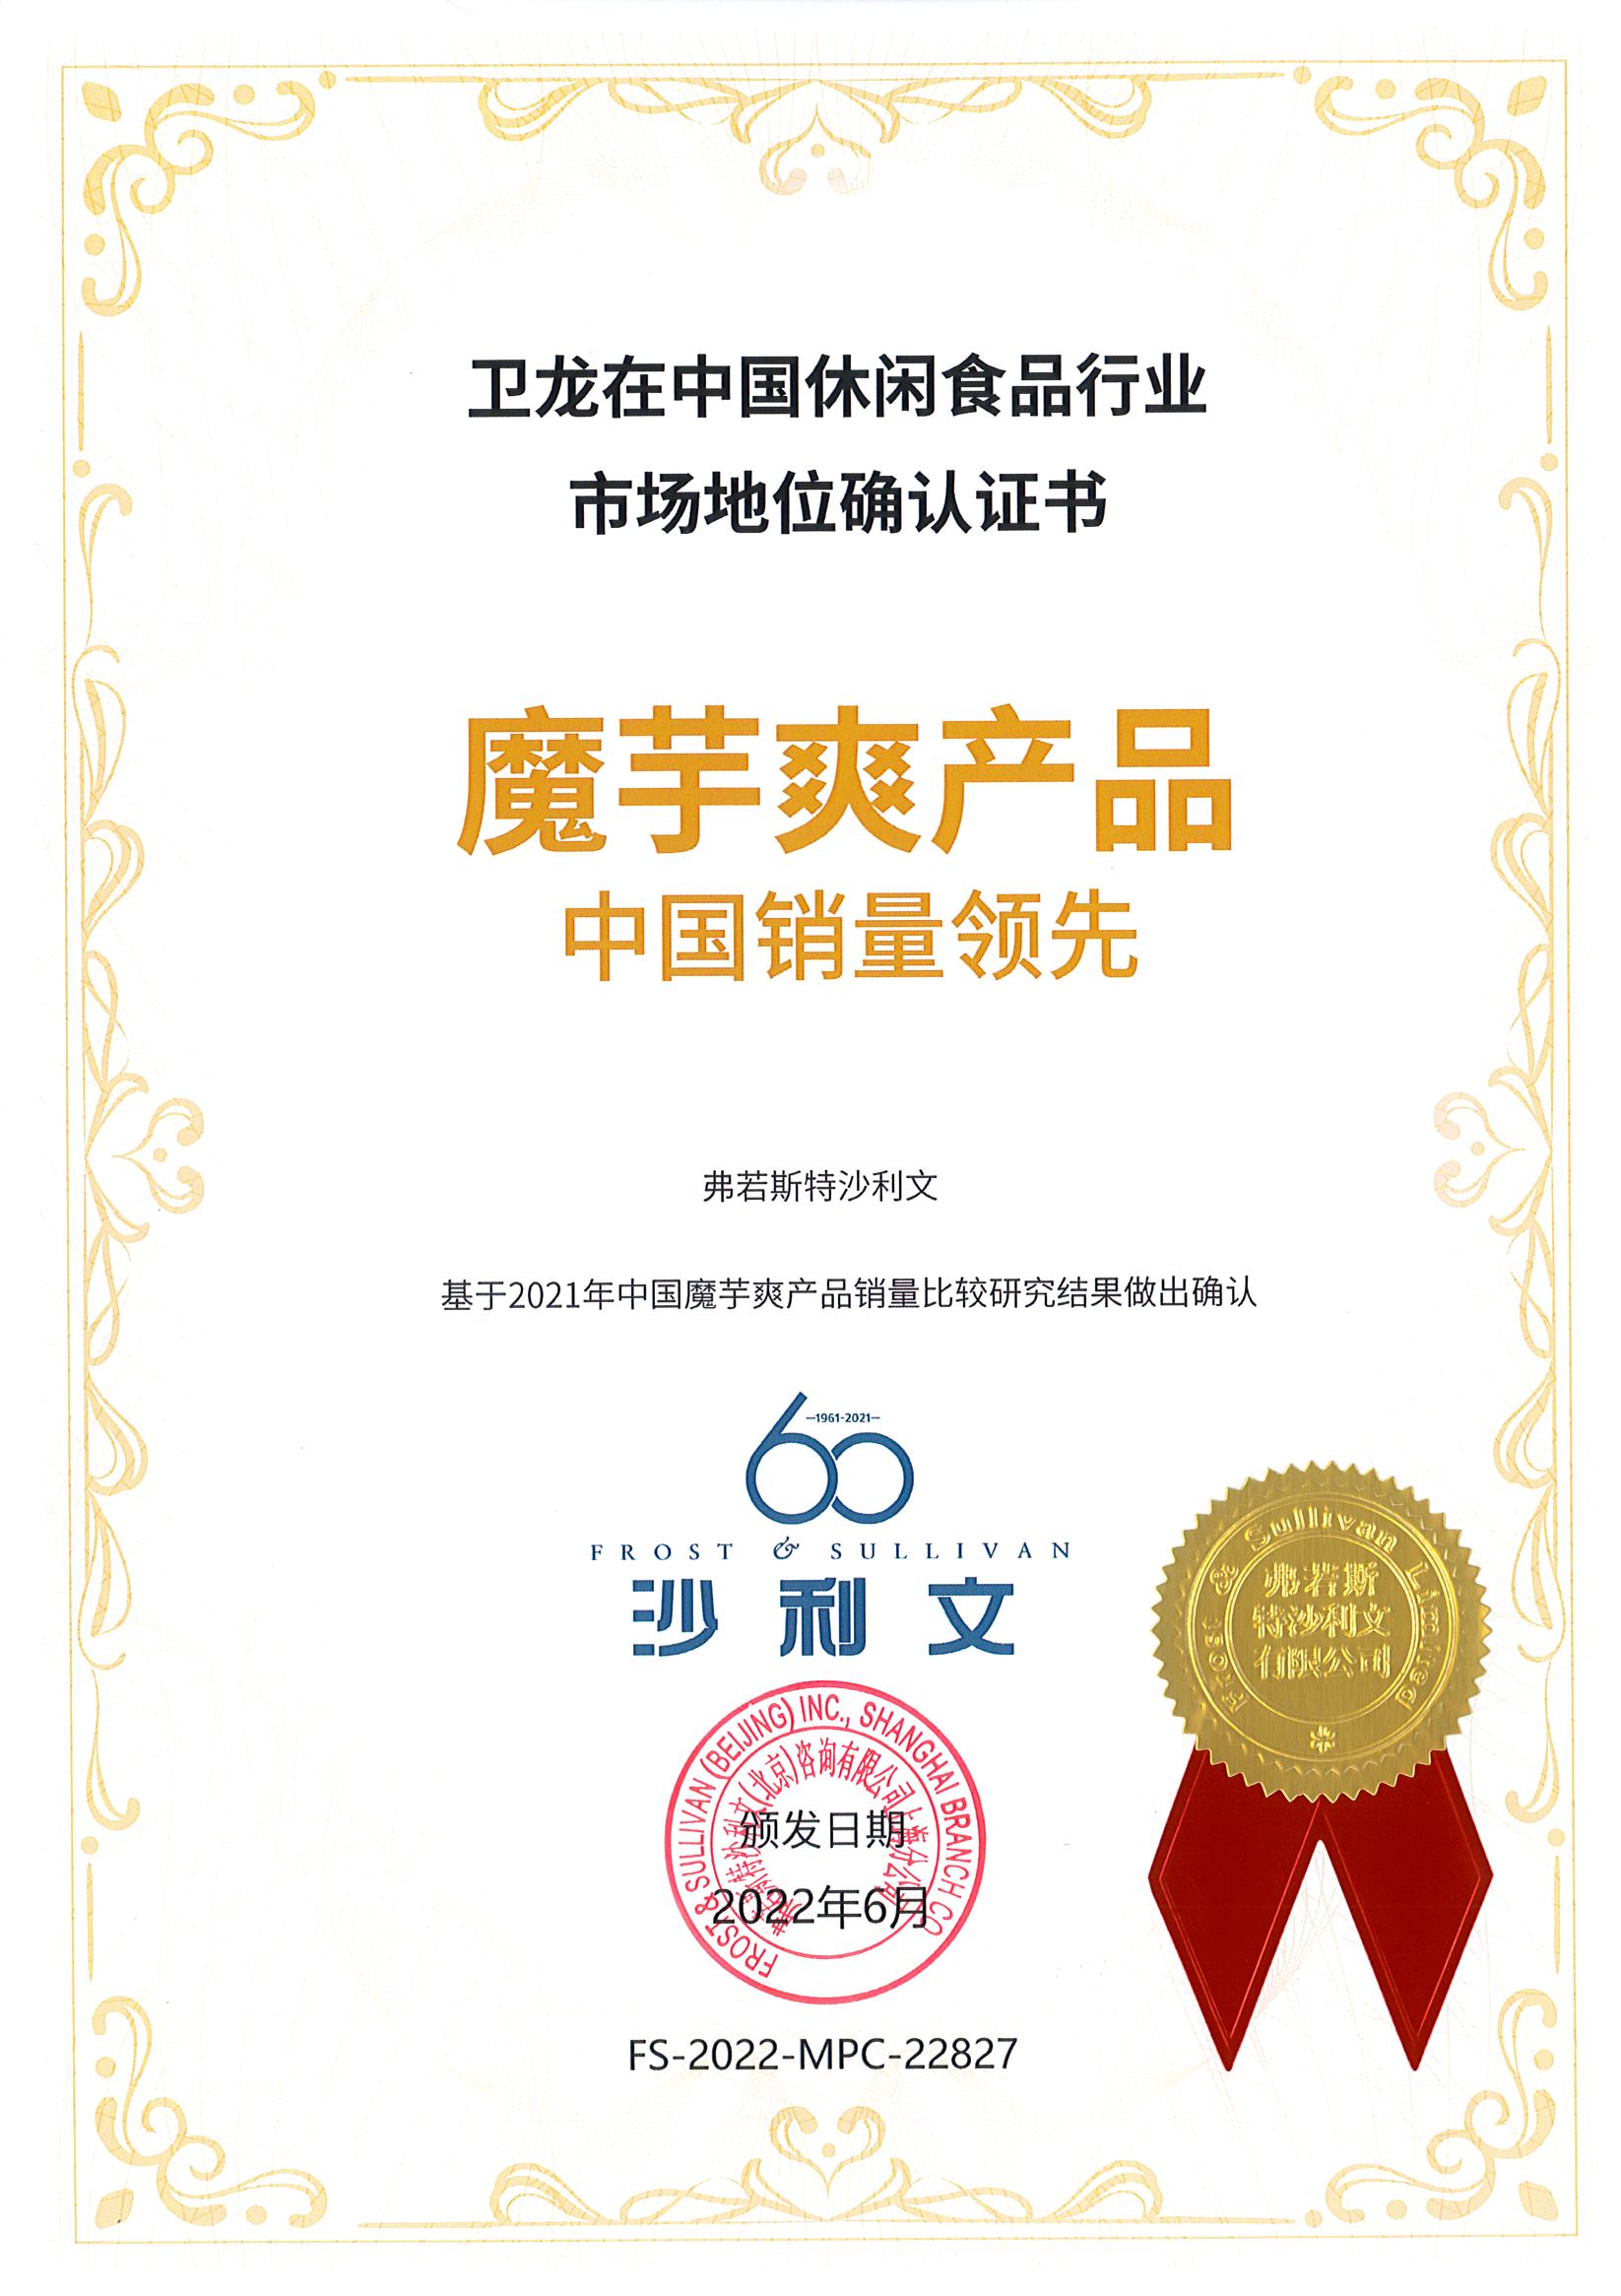 沙利文授予卫龙魔芋爽产品“中国销量领先”市场地位确认证书